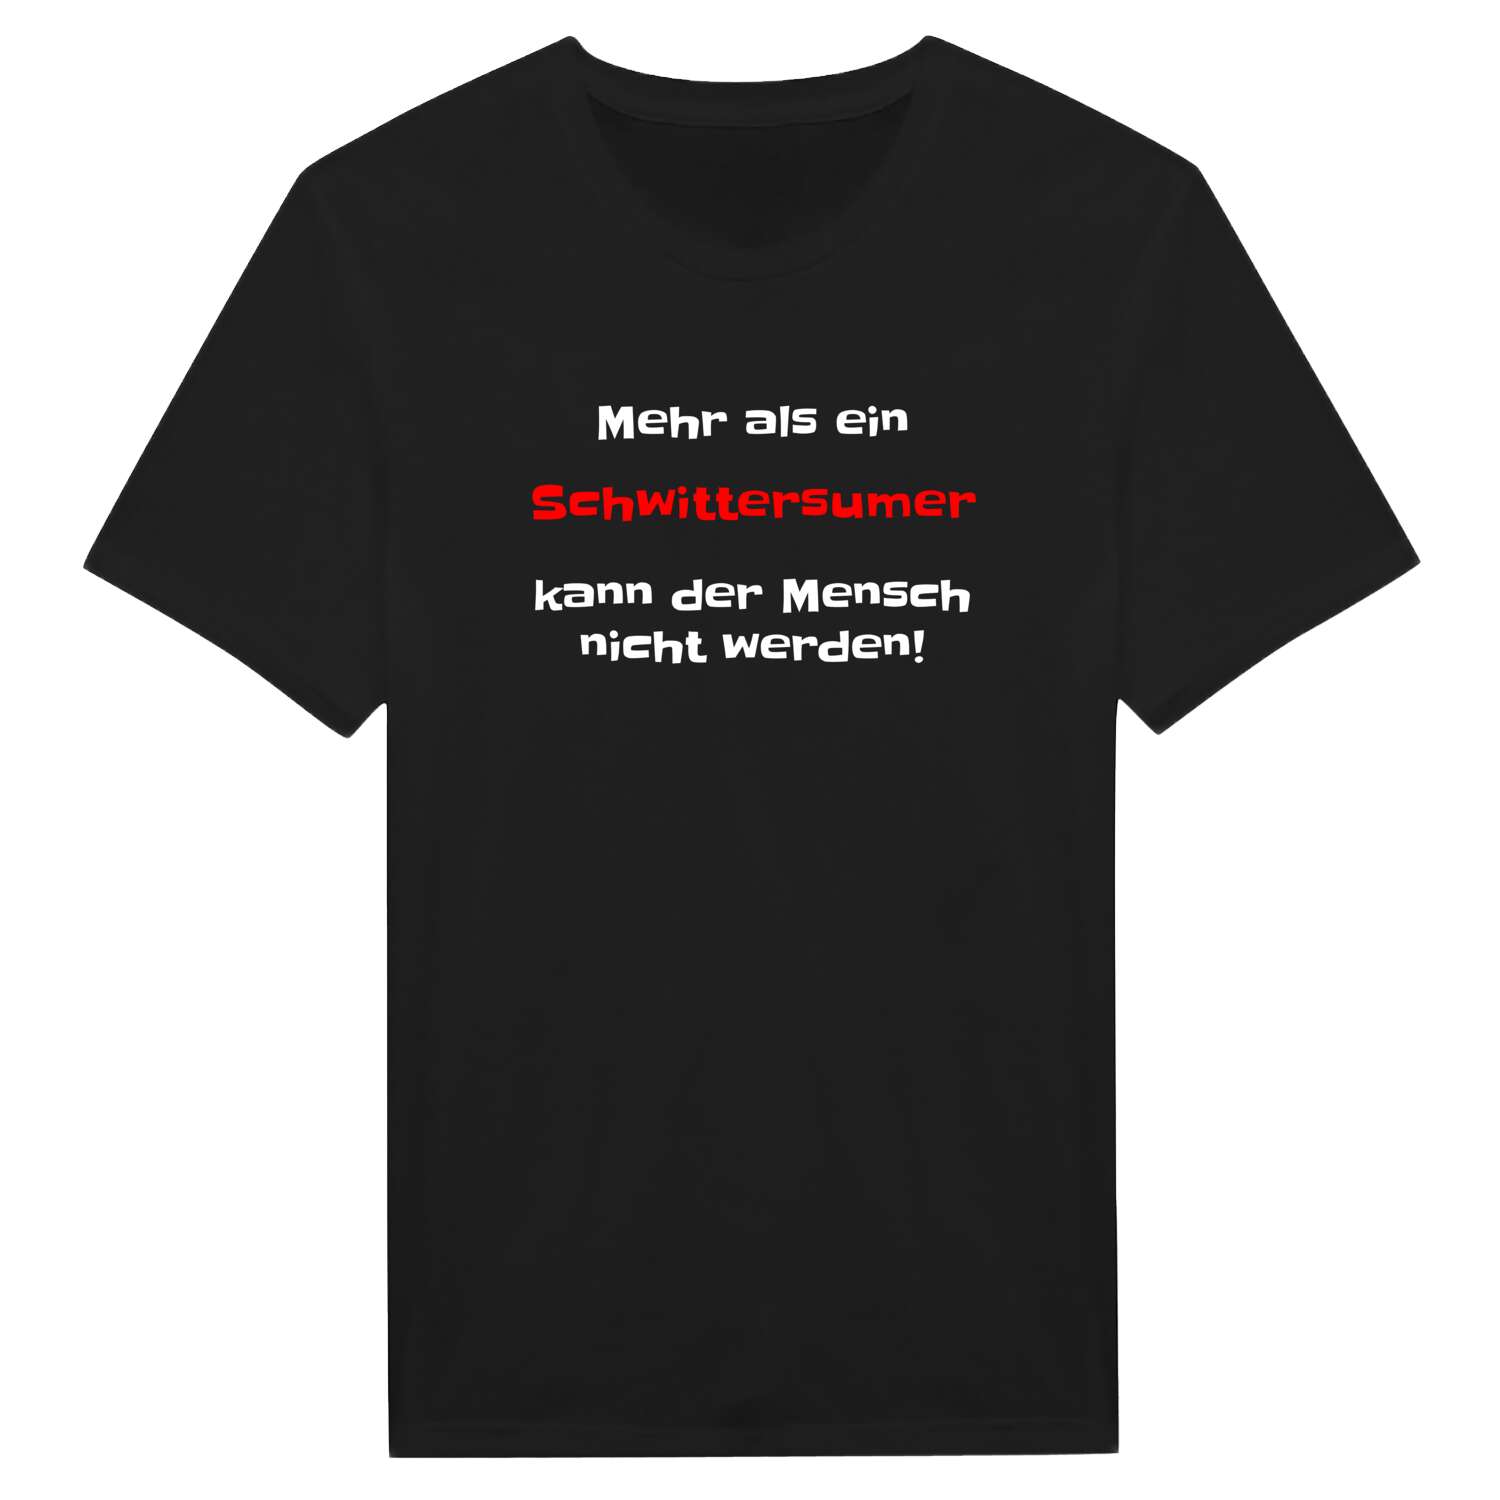 Schwittersum T-Shirt »Mehr als ein«